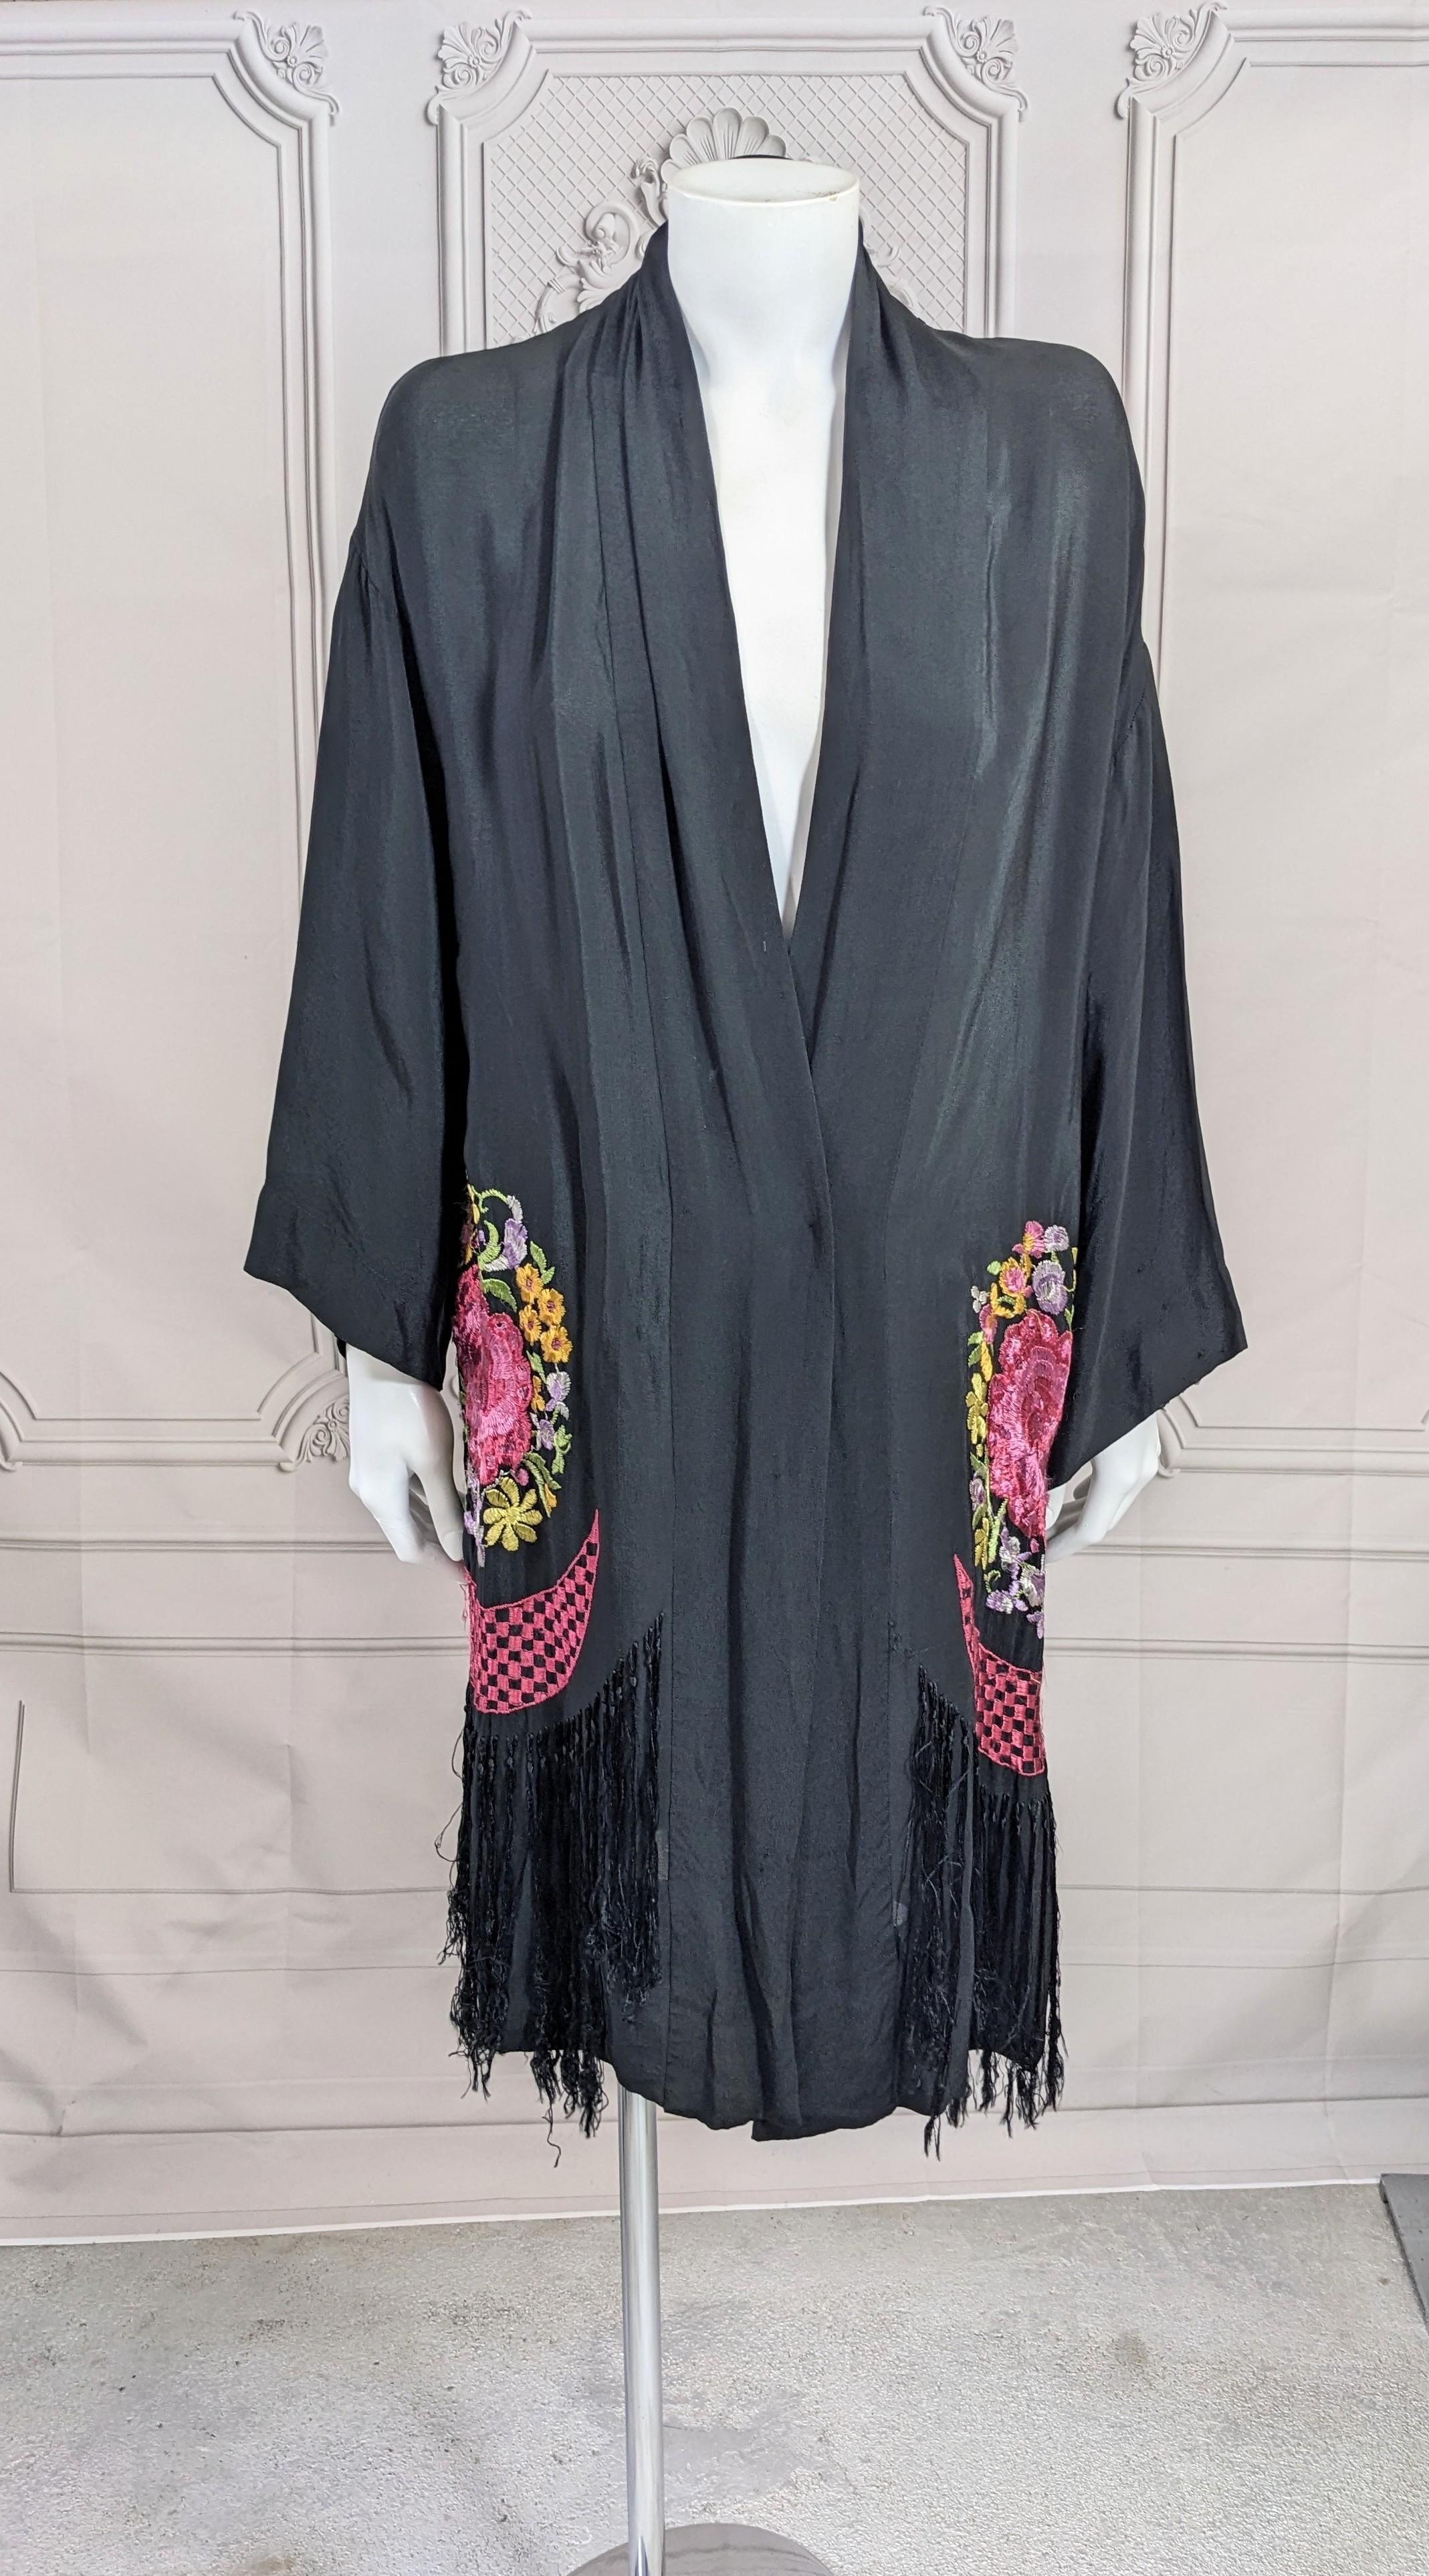 Robe à franges brodées Art déco des années 1920, qui peut facilement être portée ceinturée comme un haut ou comme une robe de chambre.  veste. Style kimono enveloppant sans fermeture. Panneaux ronds Art déco brodés de fleurs avec ourlet frangé.